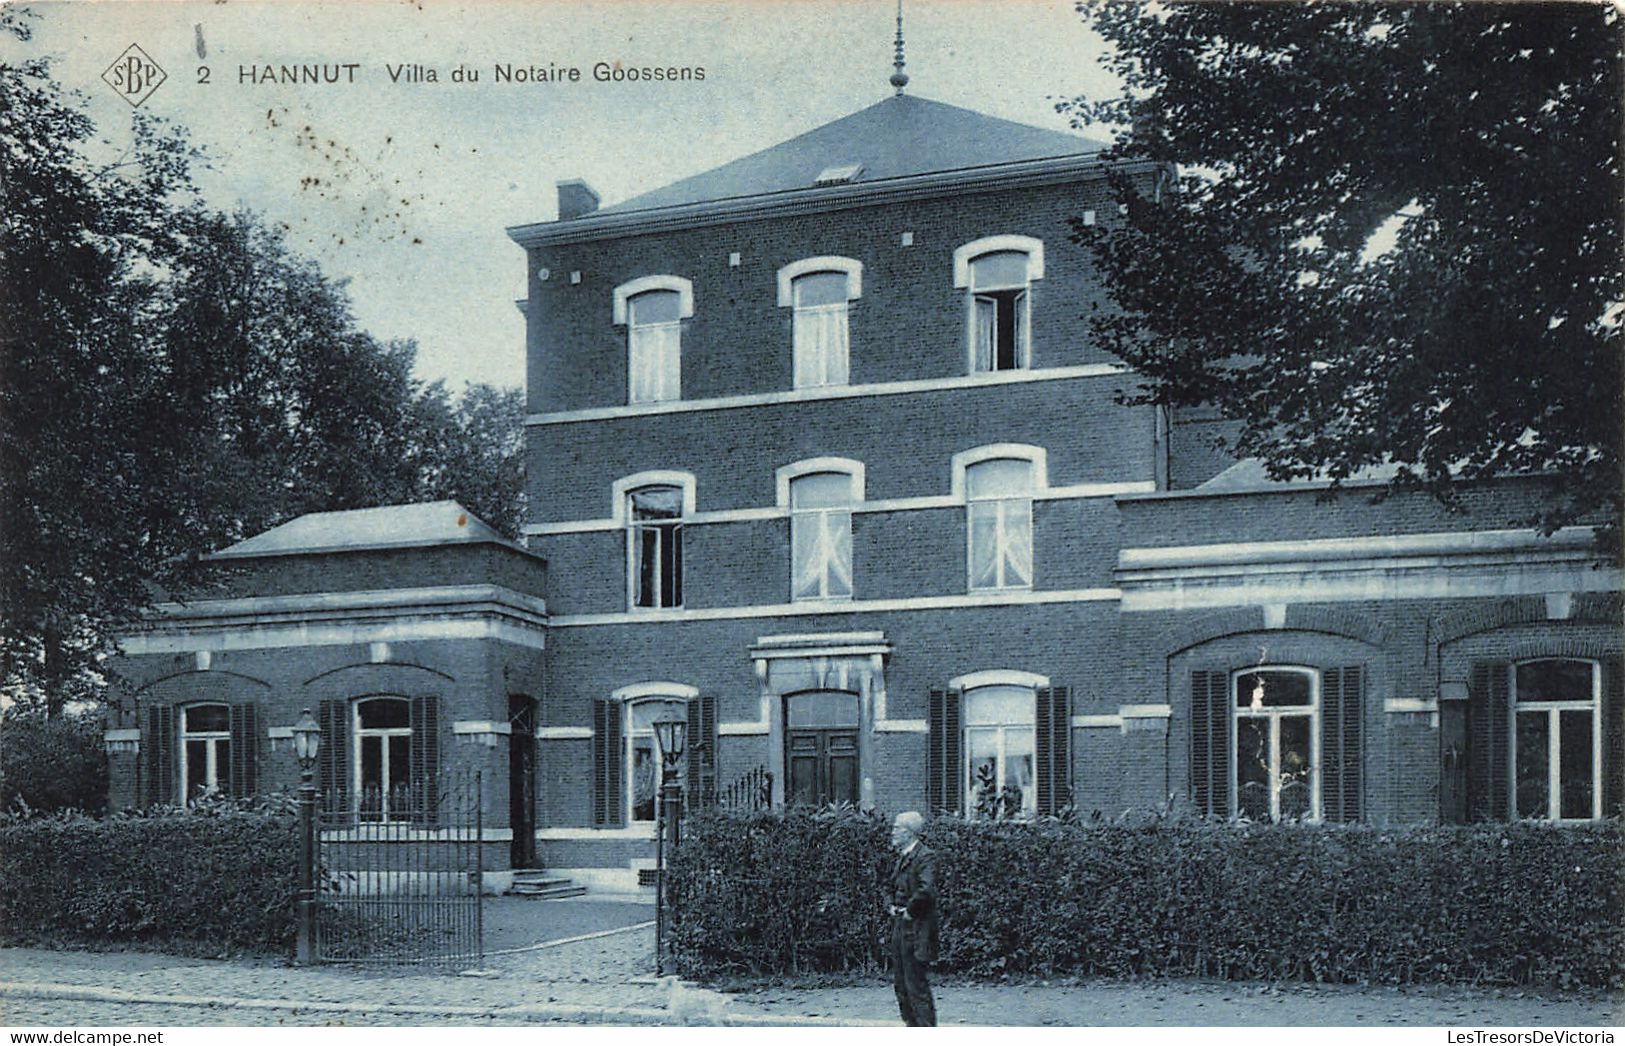 Belgique - Liège - Hannut - Villa Du Notaire Gossens - Edit. SBP - Phot. Ste An Belge - Animé - Carte Postale Ancienne - Hannuit